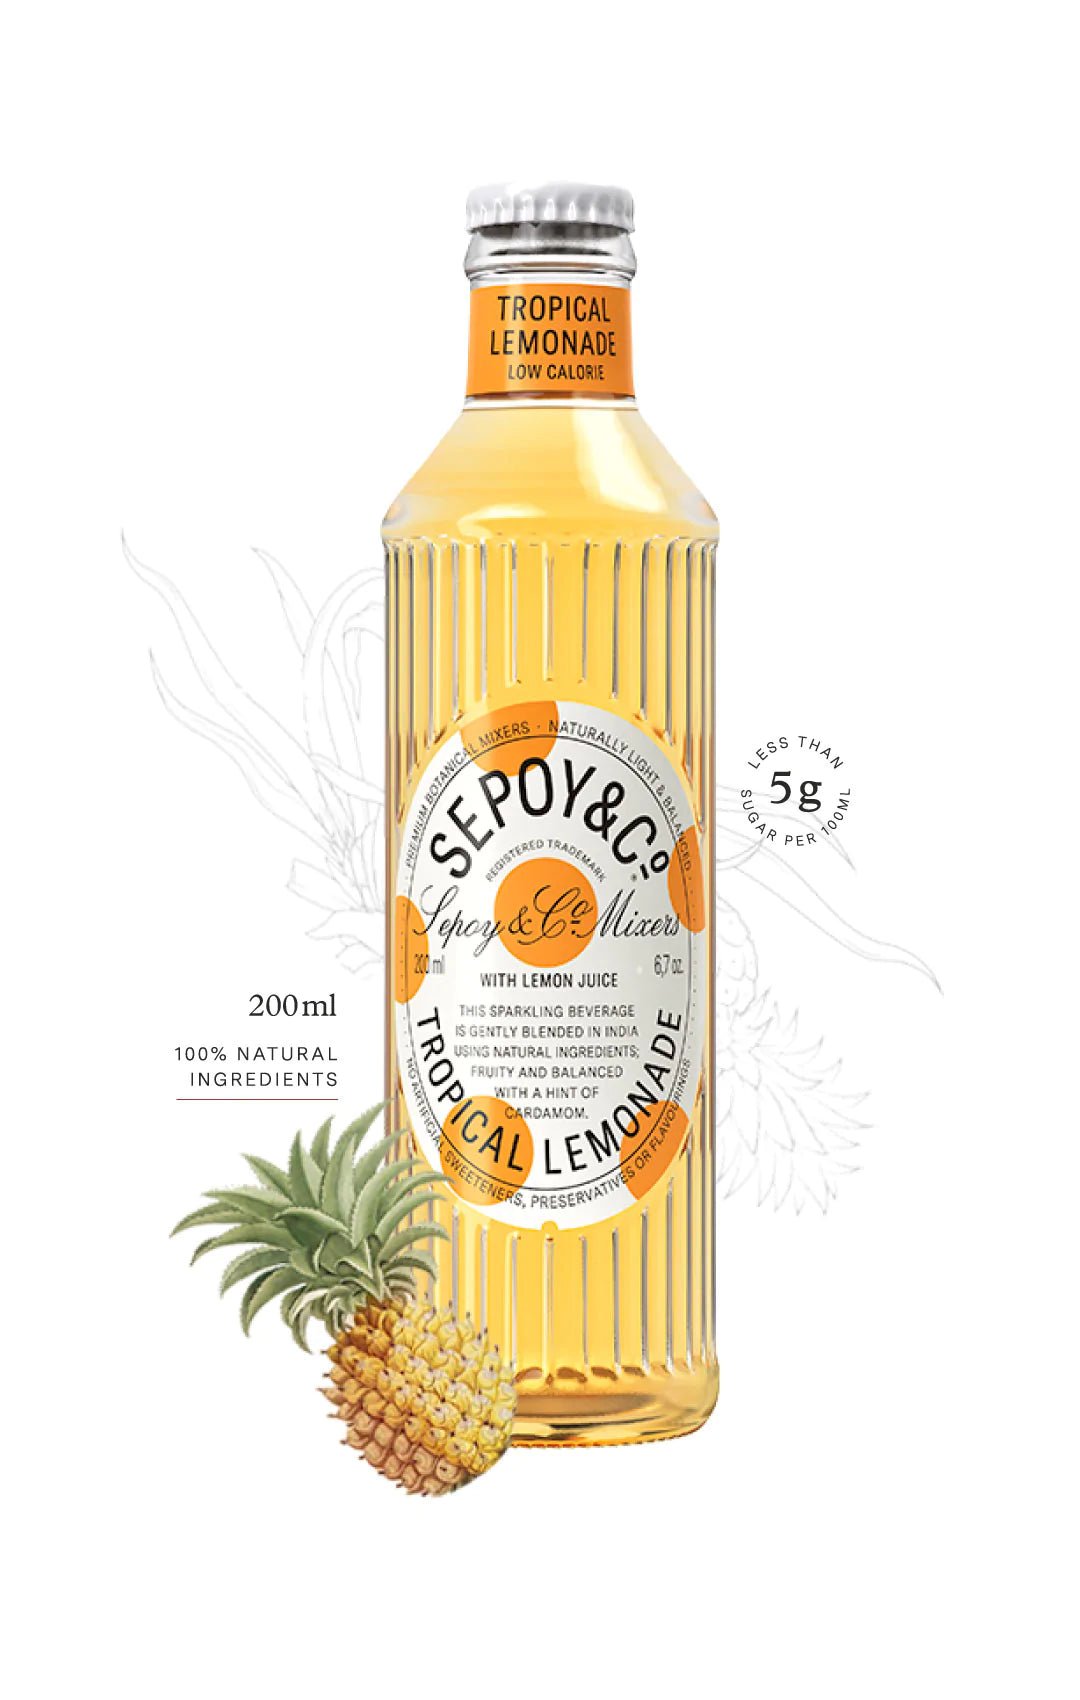 Sepoy and Co Tropical Lemonade, 200ml - Super 7 Mart